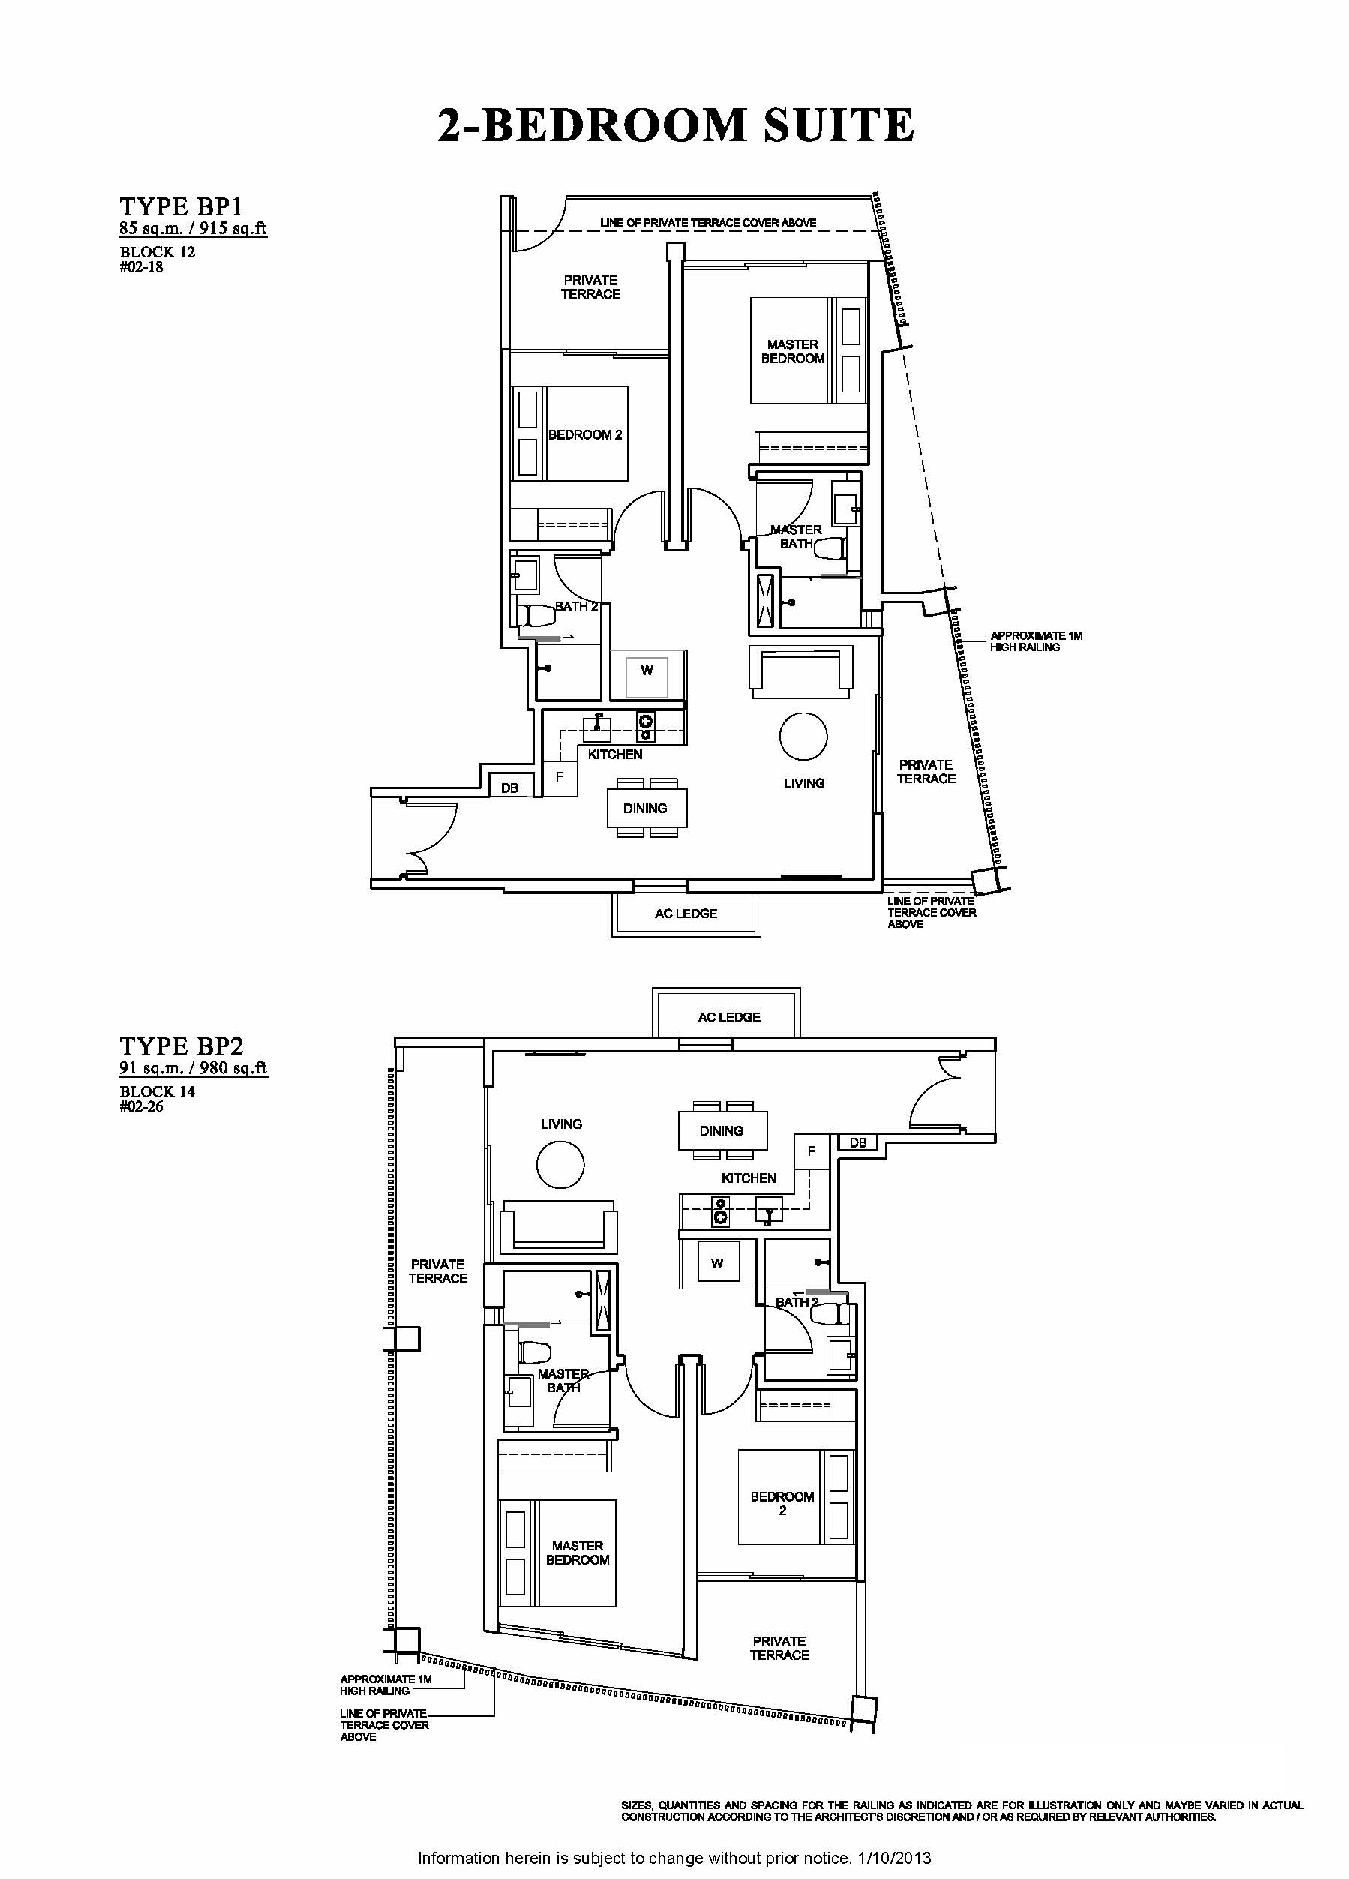 The Venue Residences 2 Bedroom Suite Floor Plan Type BP1 and BP2